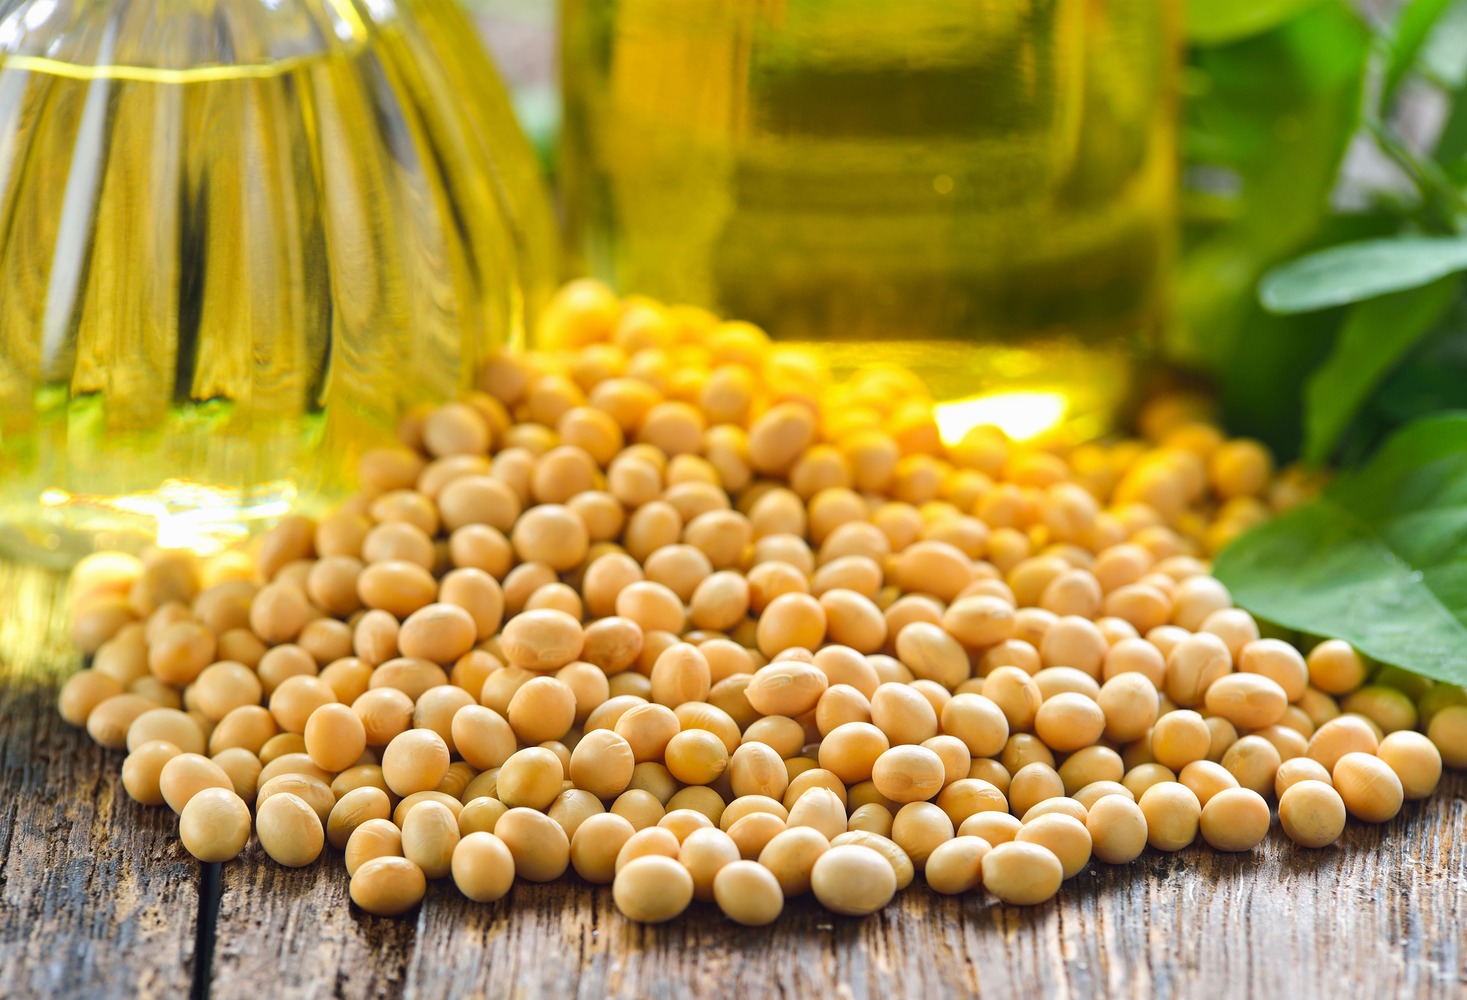 soy-beans-and-oil-2021-09-03-19-08-38-utc-2-1-1.jpg